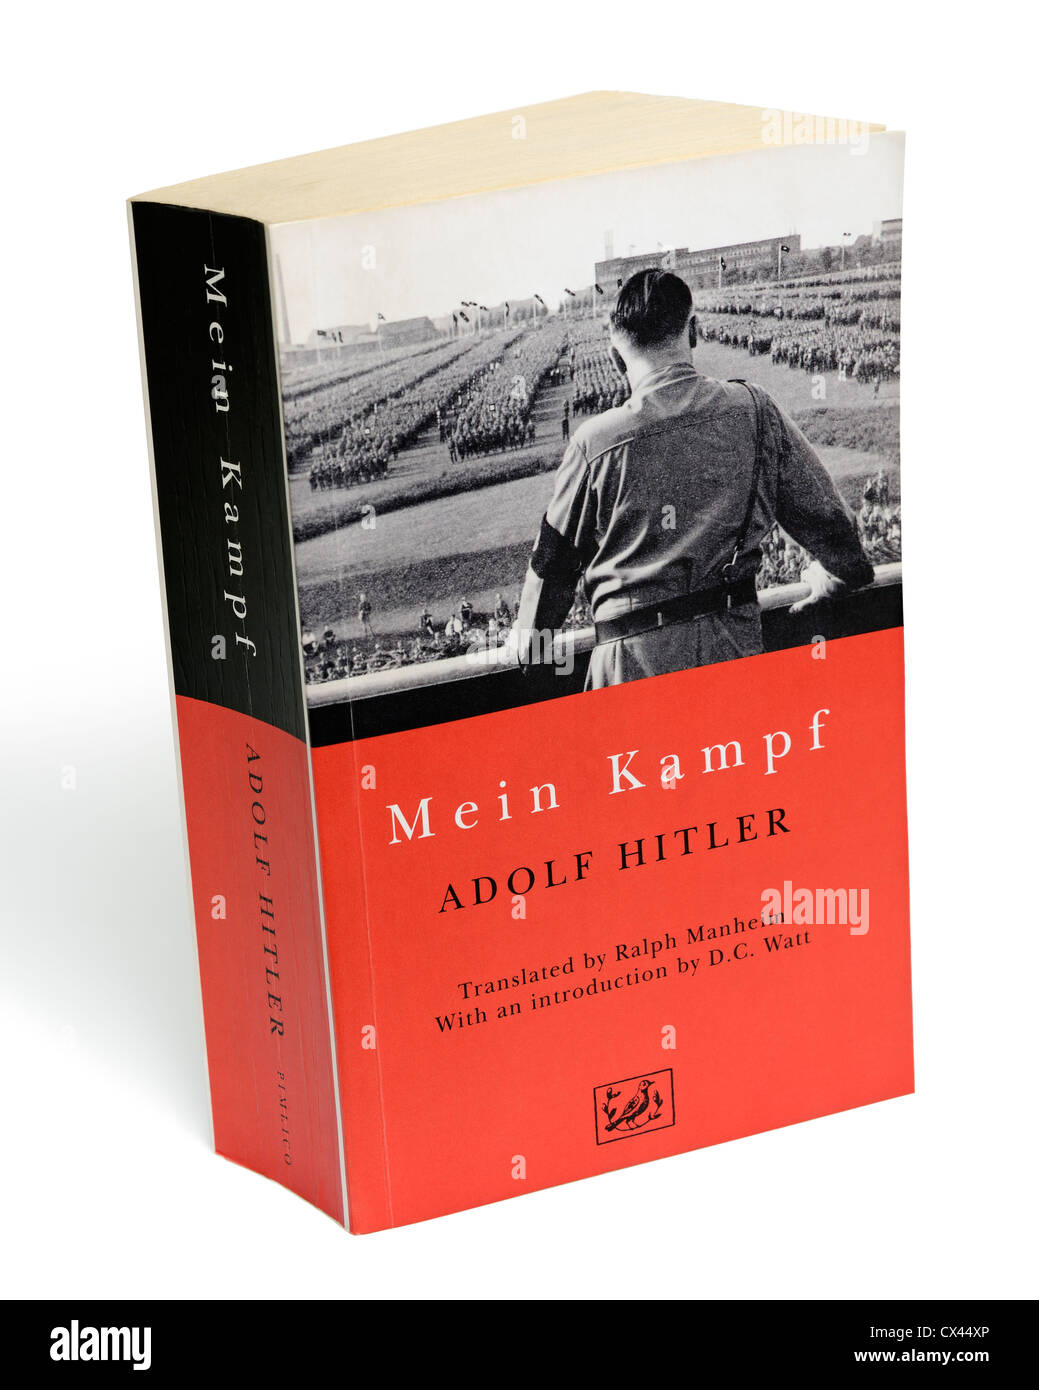 Mein Kampf. Réservez par Adolf Hitler, contenant son autobiographie et idéologie politique nazie. Banque D'Images